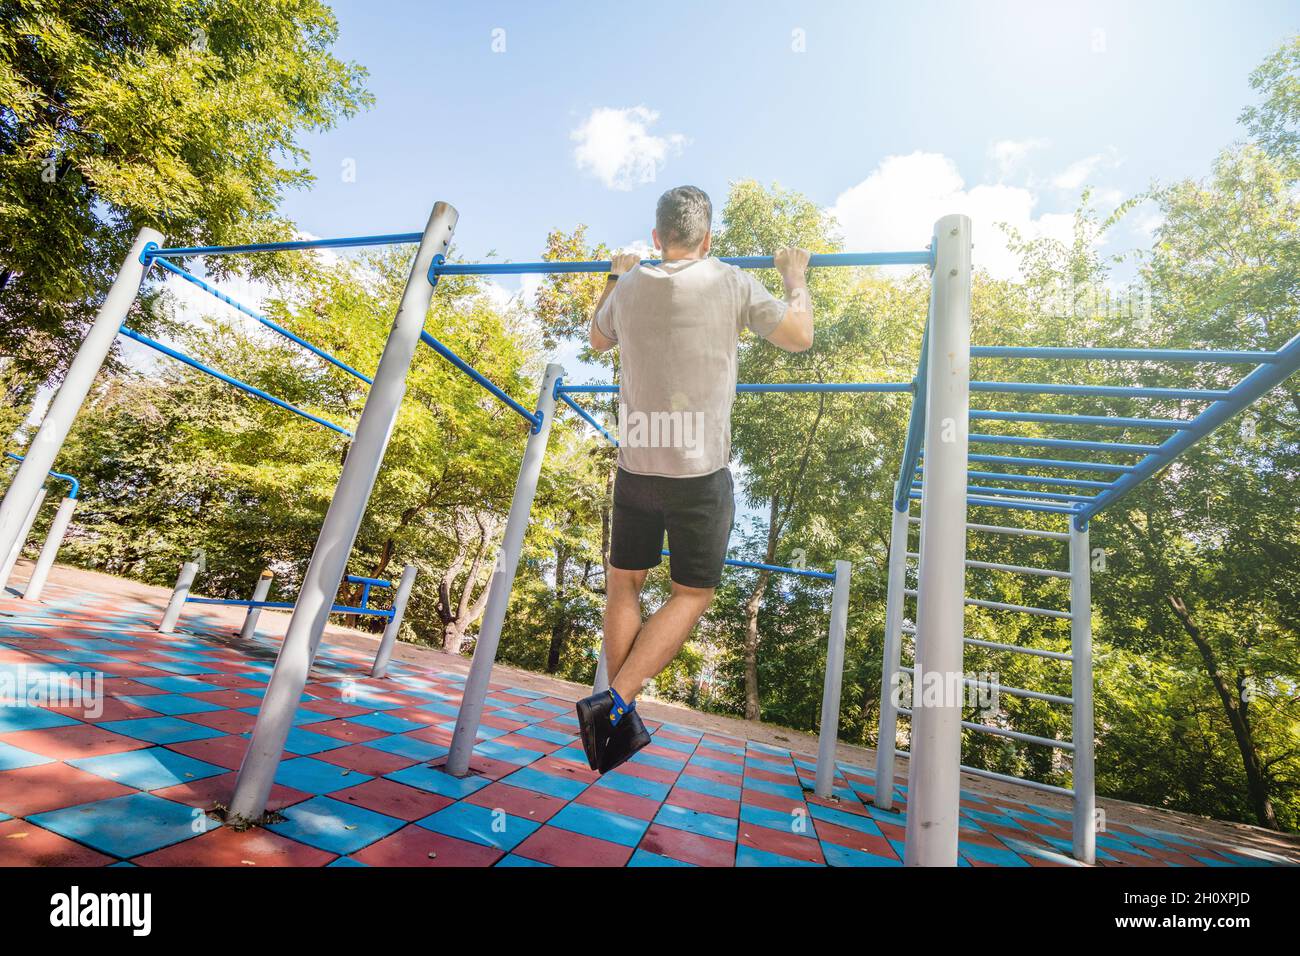 Un homme qui fait des pull-ups sur une barre horizontale sur une aire de jeux par une journée ensoleillée. Banque D'Images